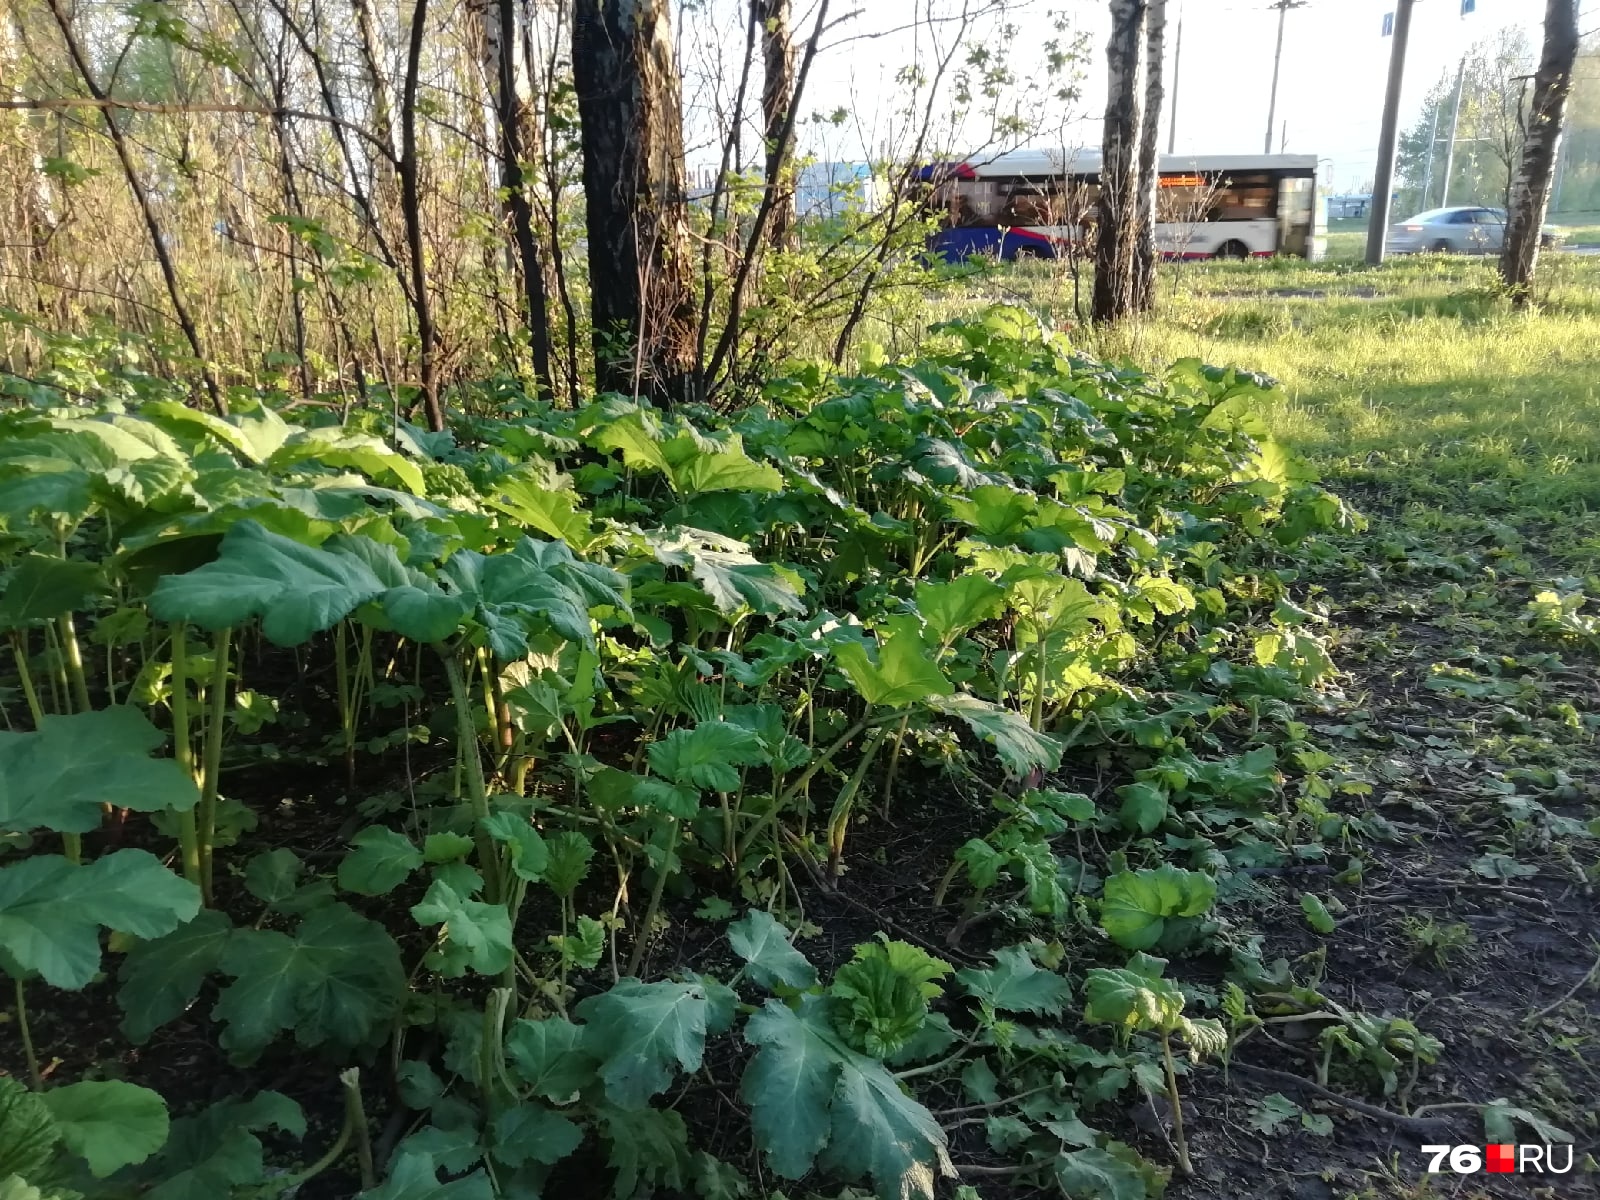 Ядовитое растение растёт в разных районах Ярославля